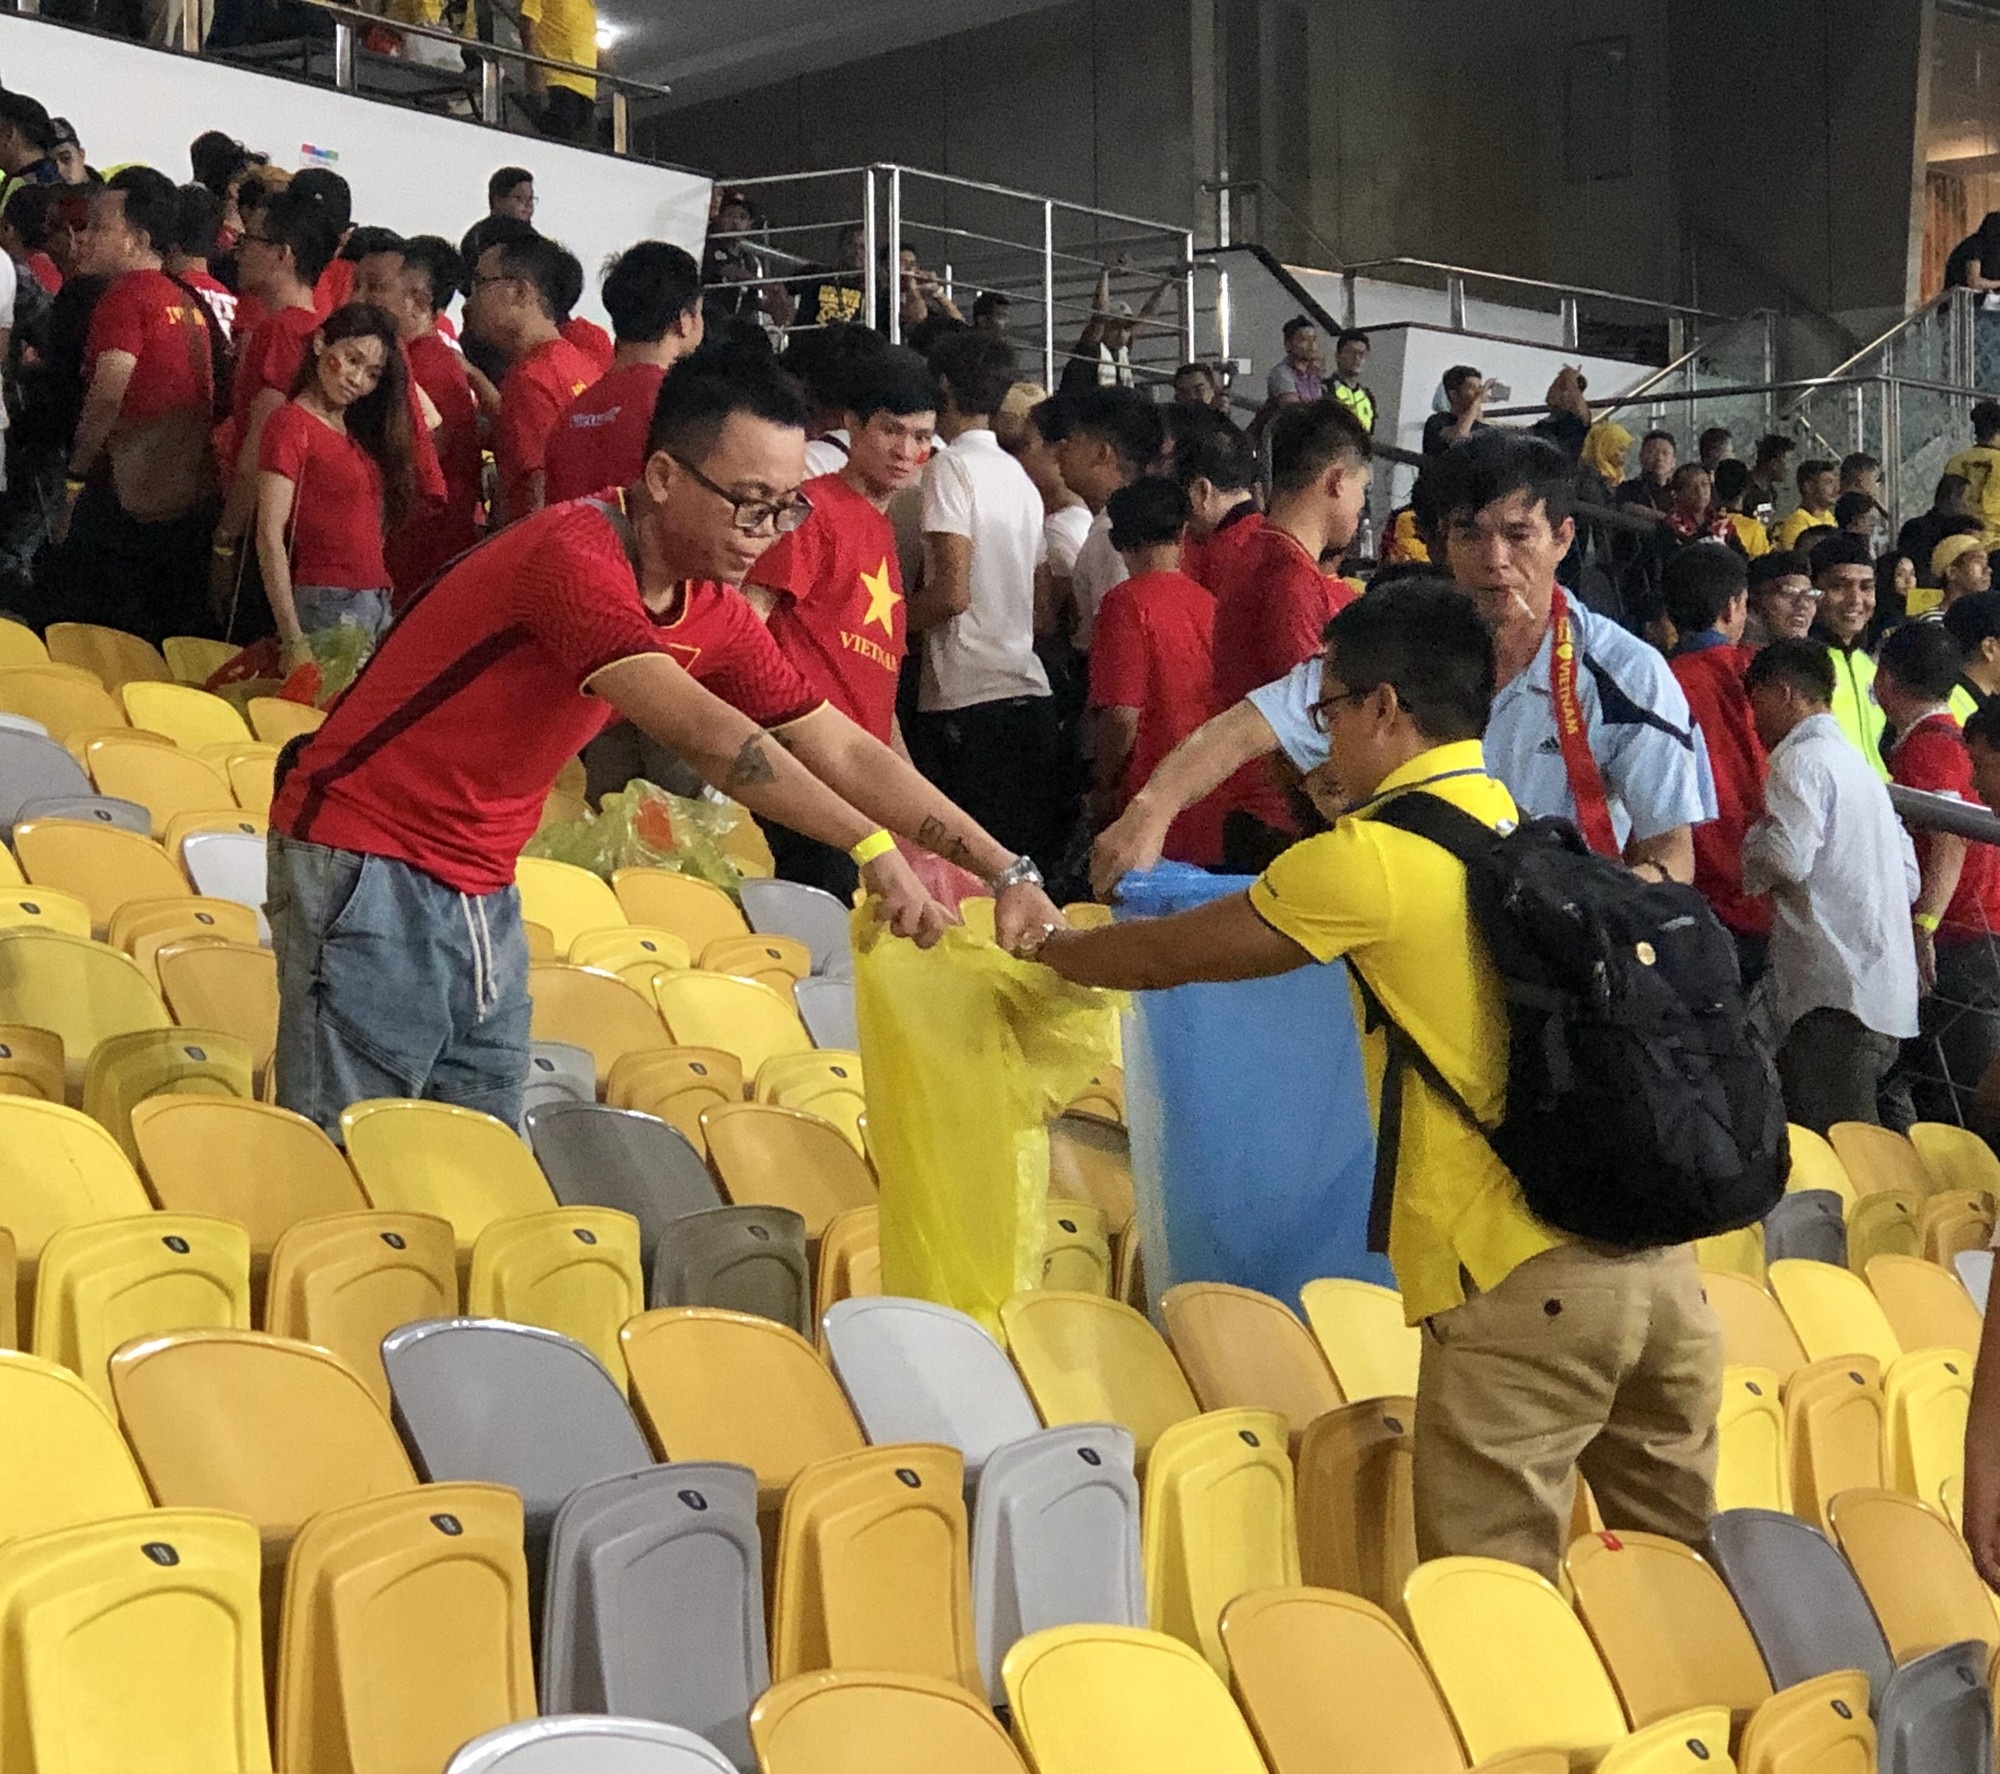 CĐV Việt Nam nhặt sạch rác trên khán đài sau trận chung kết tại Malaysia - Ảnh 2.